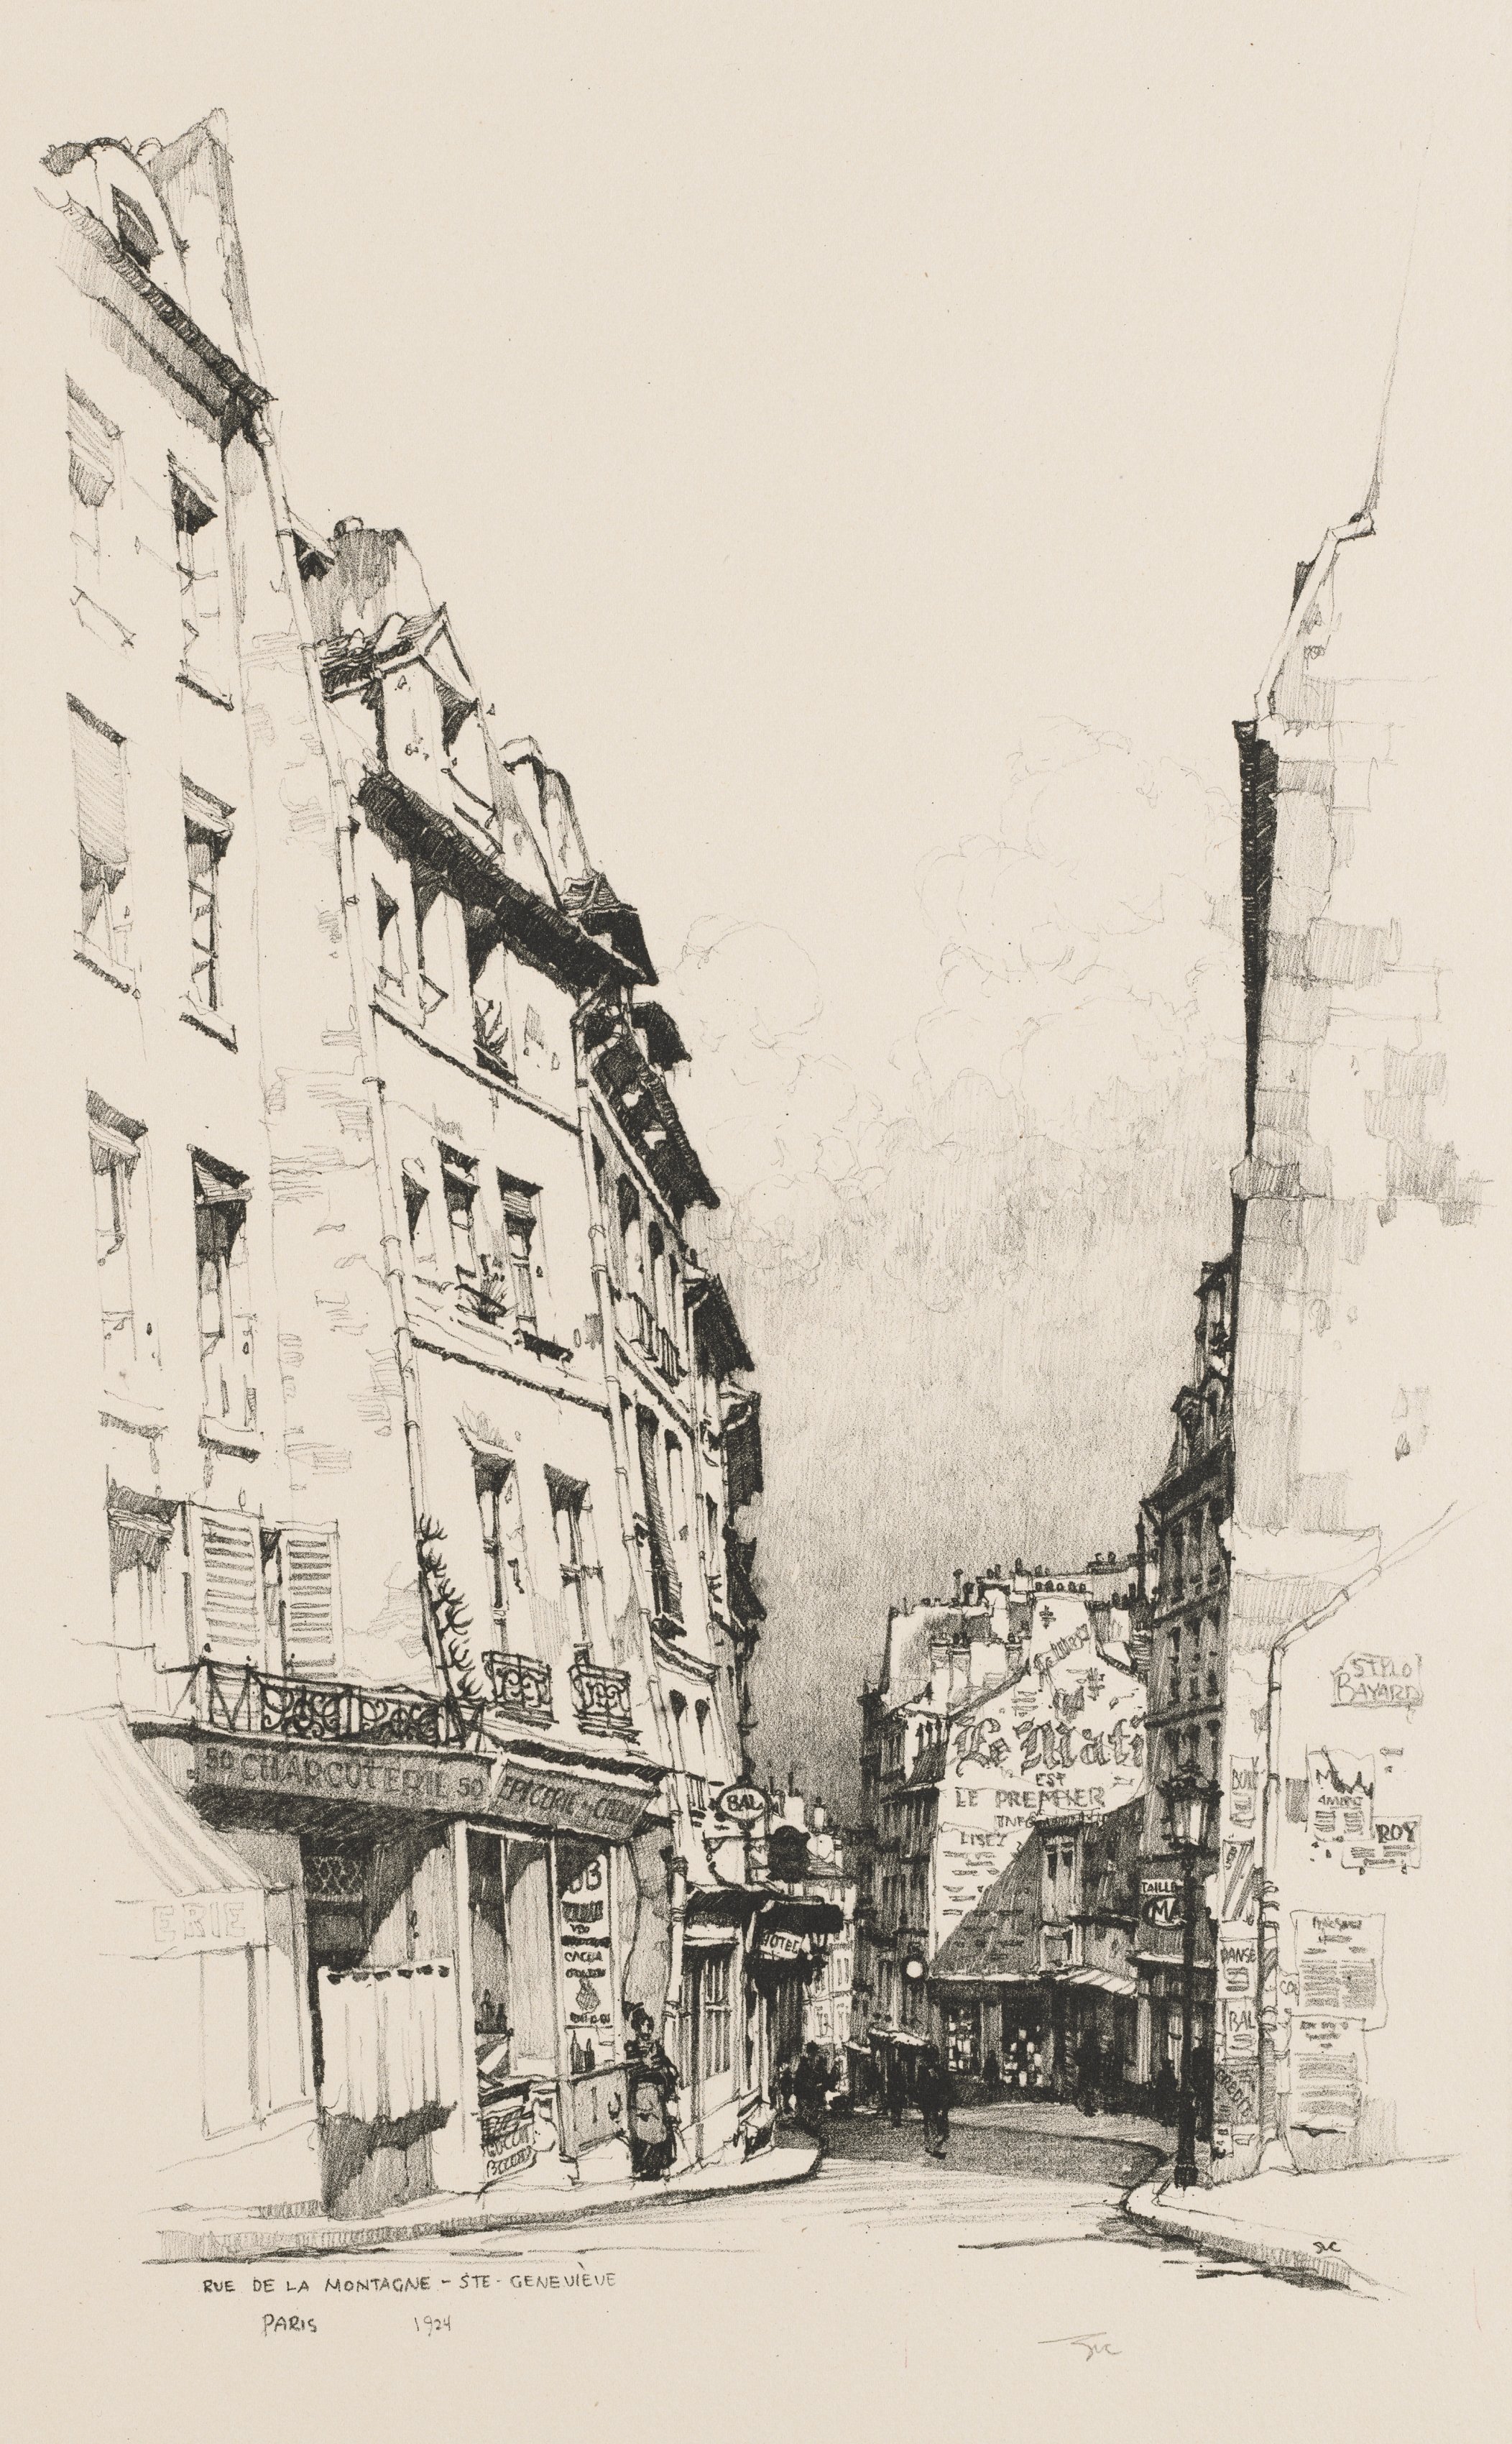 Twenty Lithographs of Old Paris (Vingt Lithographies du Vieux Paris): Rue de la Montagne Sainte Geneviève, Paris